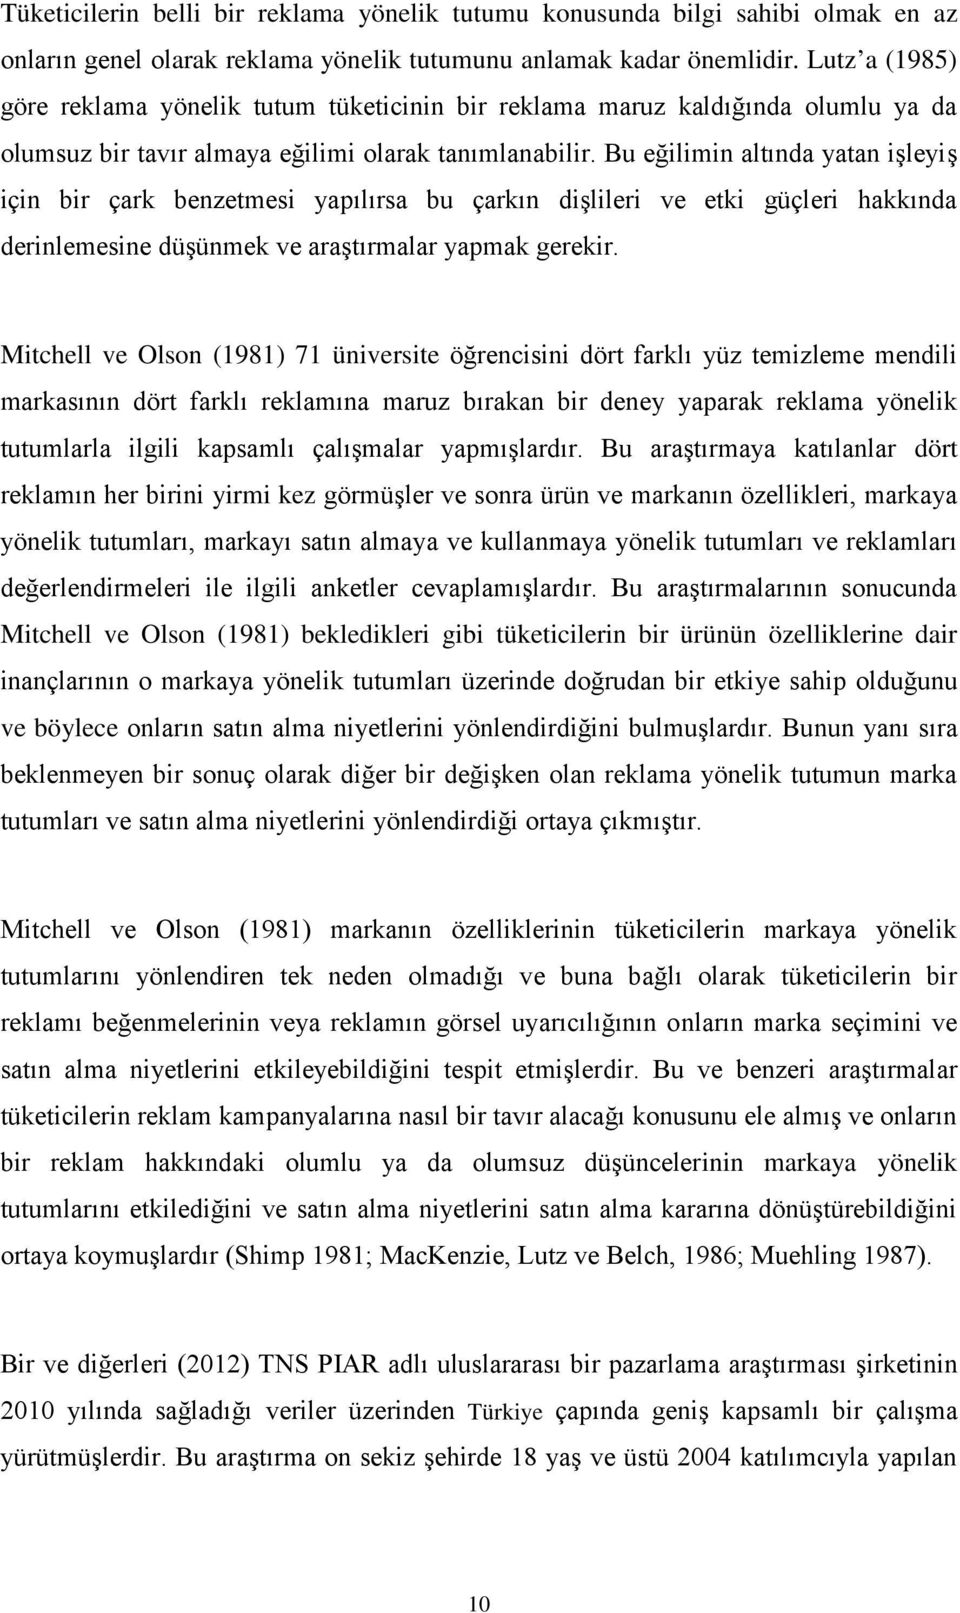 Lutz a (1985) Mitchell ve Olson (1981) 71 üniversite dört yirmi kez Mitchell ve